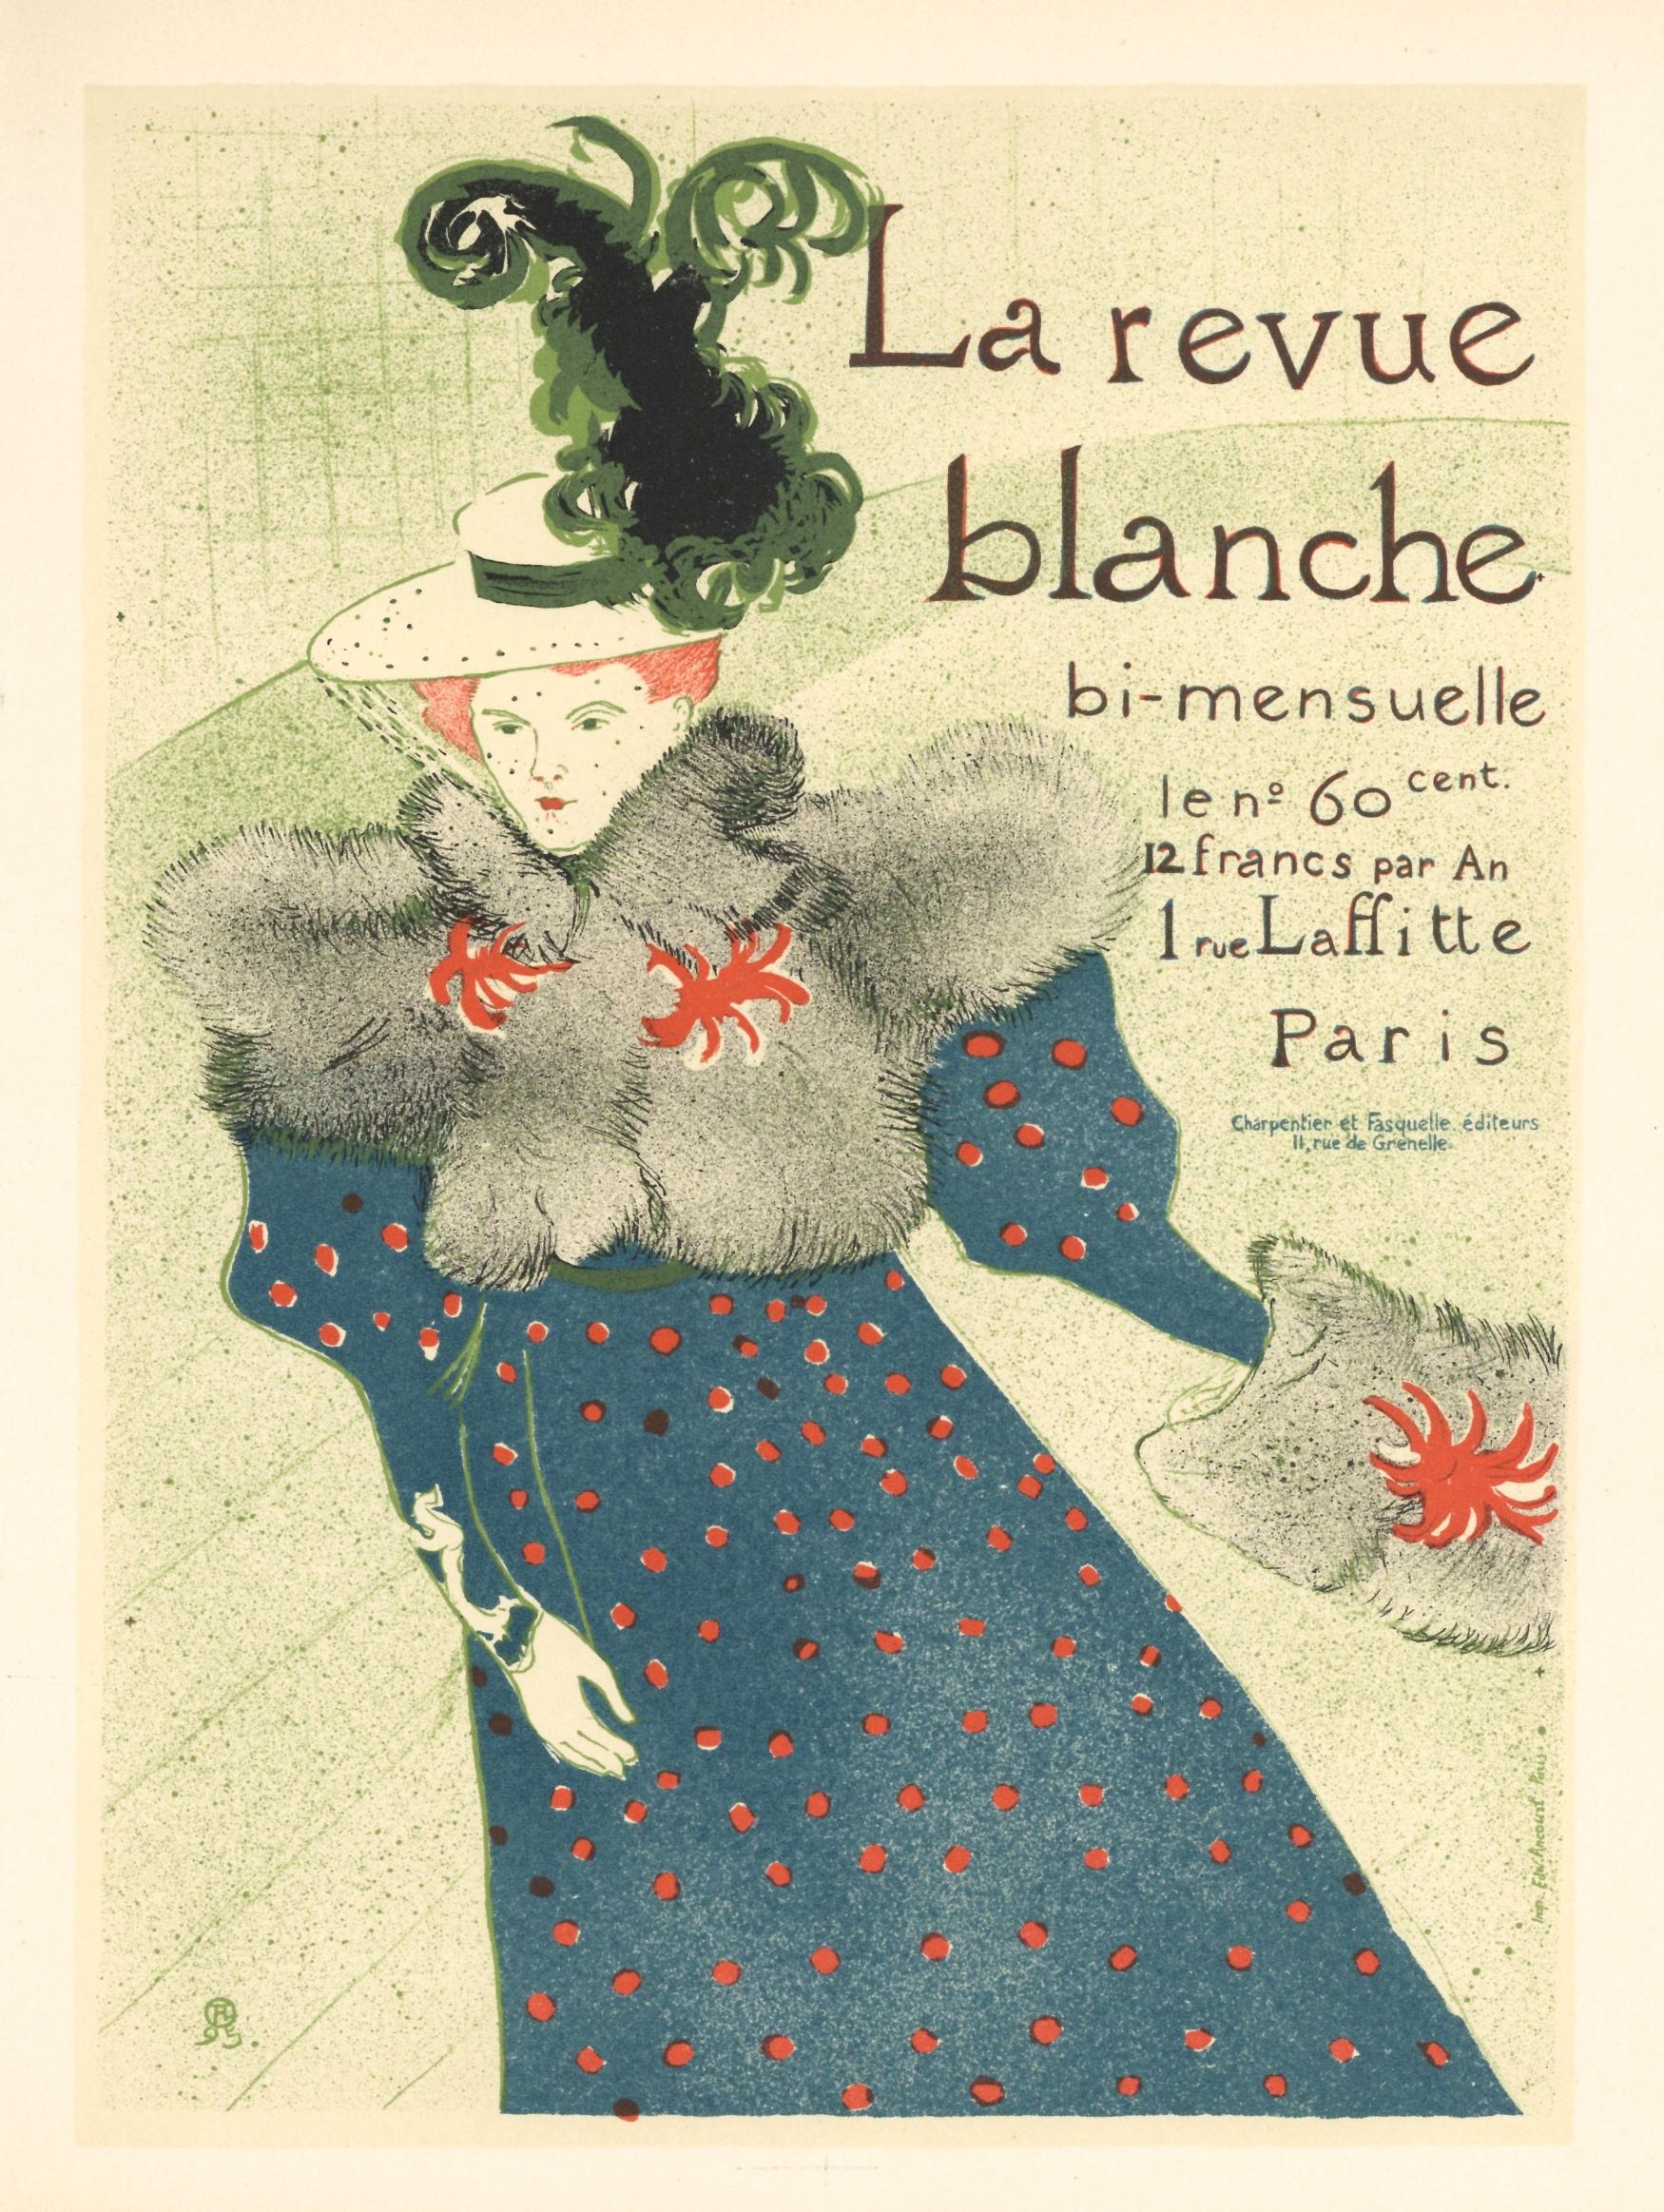 "La revue blanche" lithograph poster - Print by (After) Henri Toulouse Lautrec